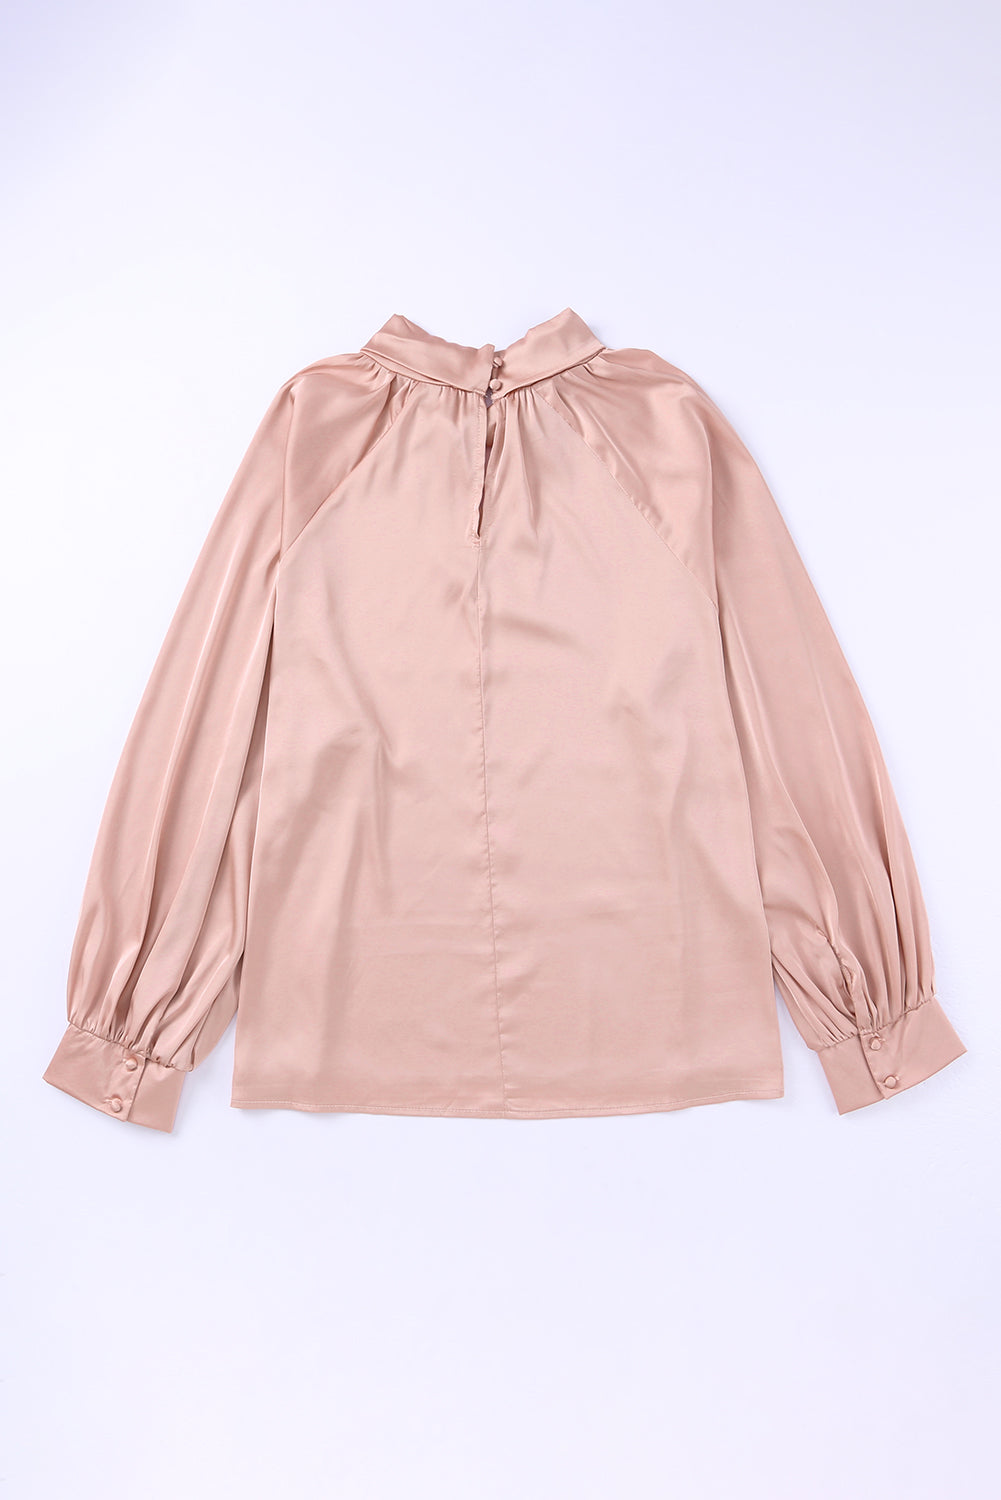 Rožnata satenasta bluza z visokim ovratnikom in napihnjenimi rokavi